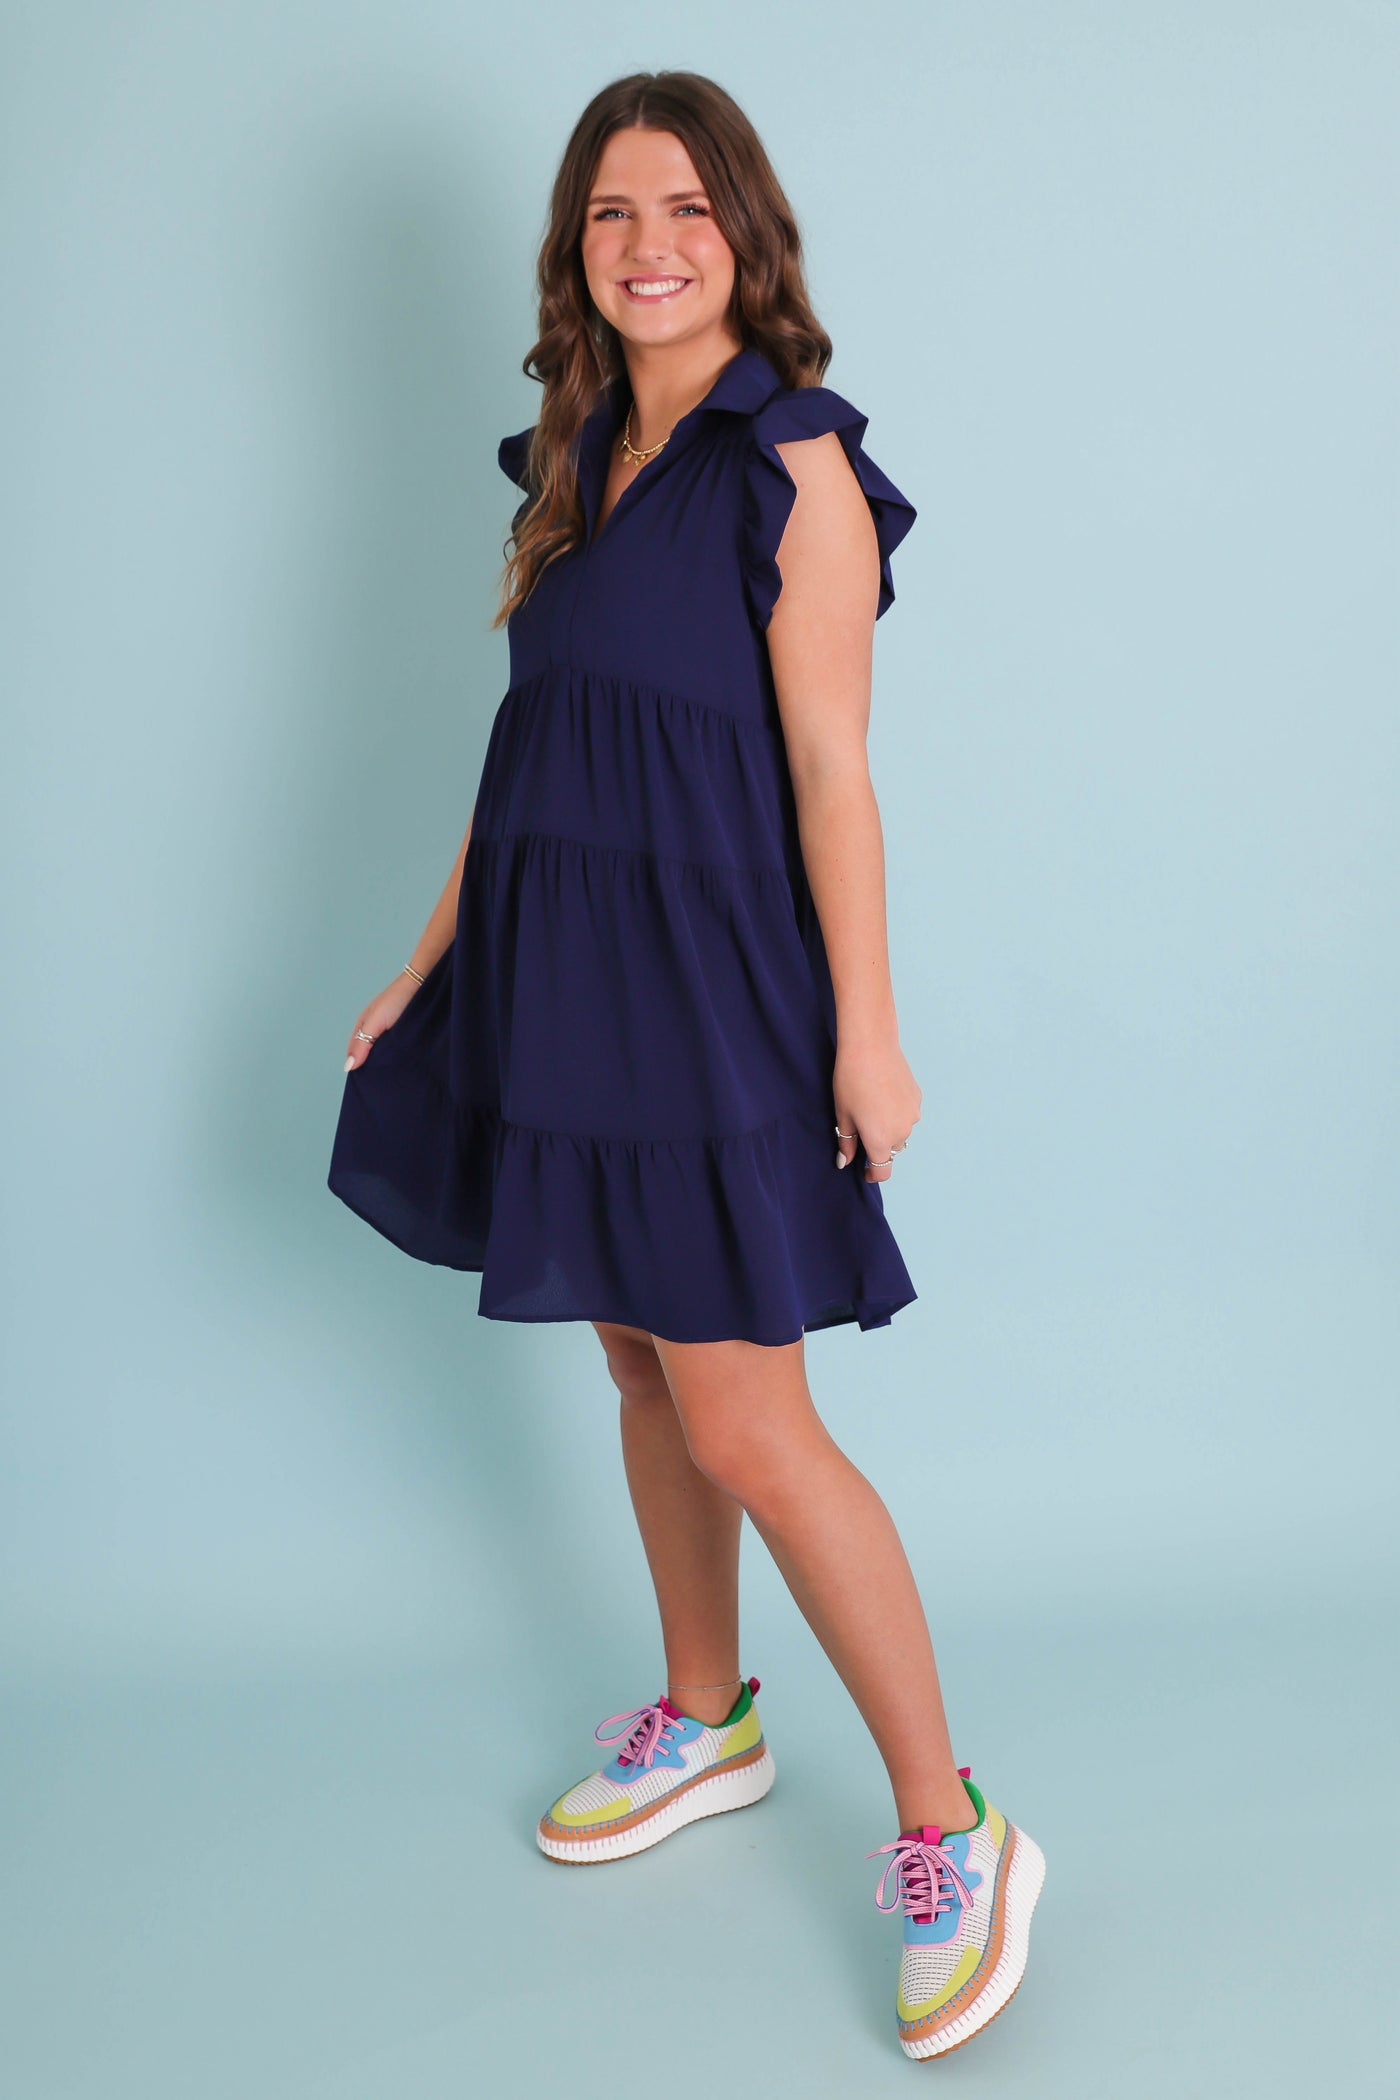 Solid Navy Dress For Women- Flutter Sleeve Navy Dress- Umgee Dresses